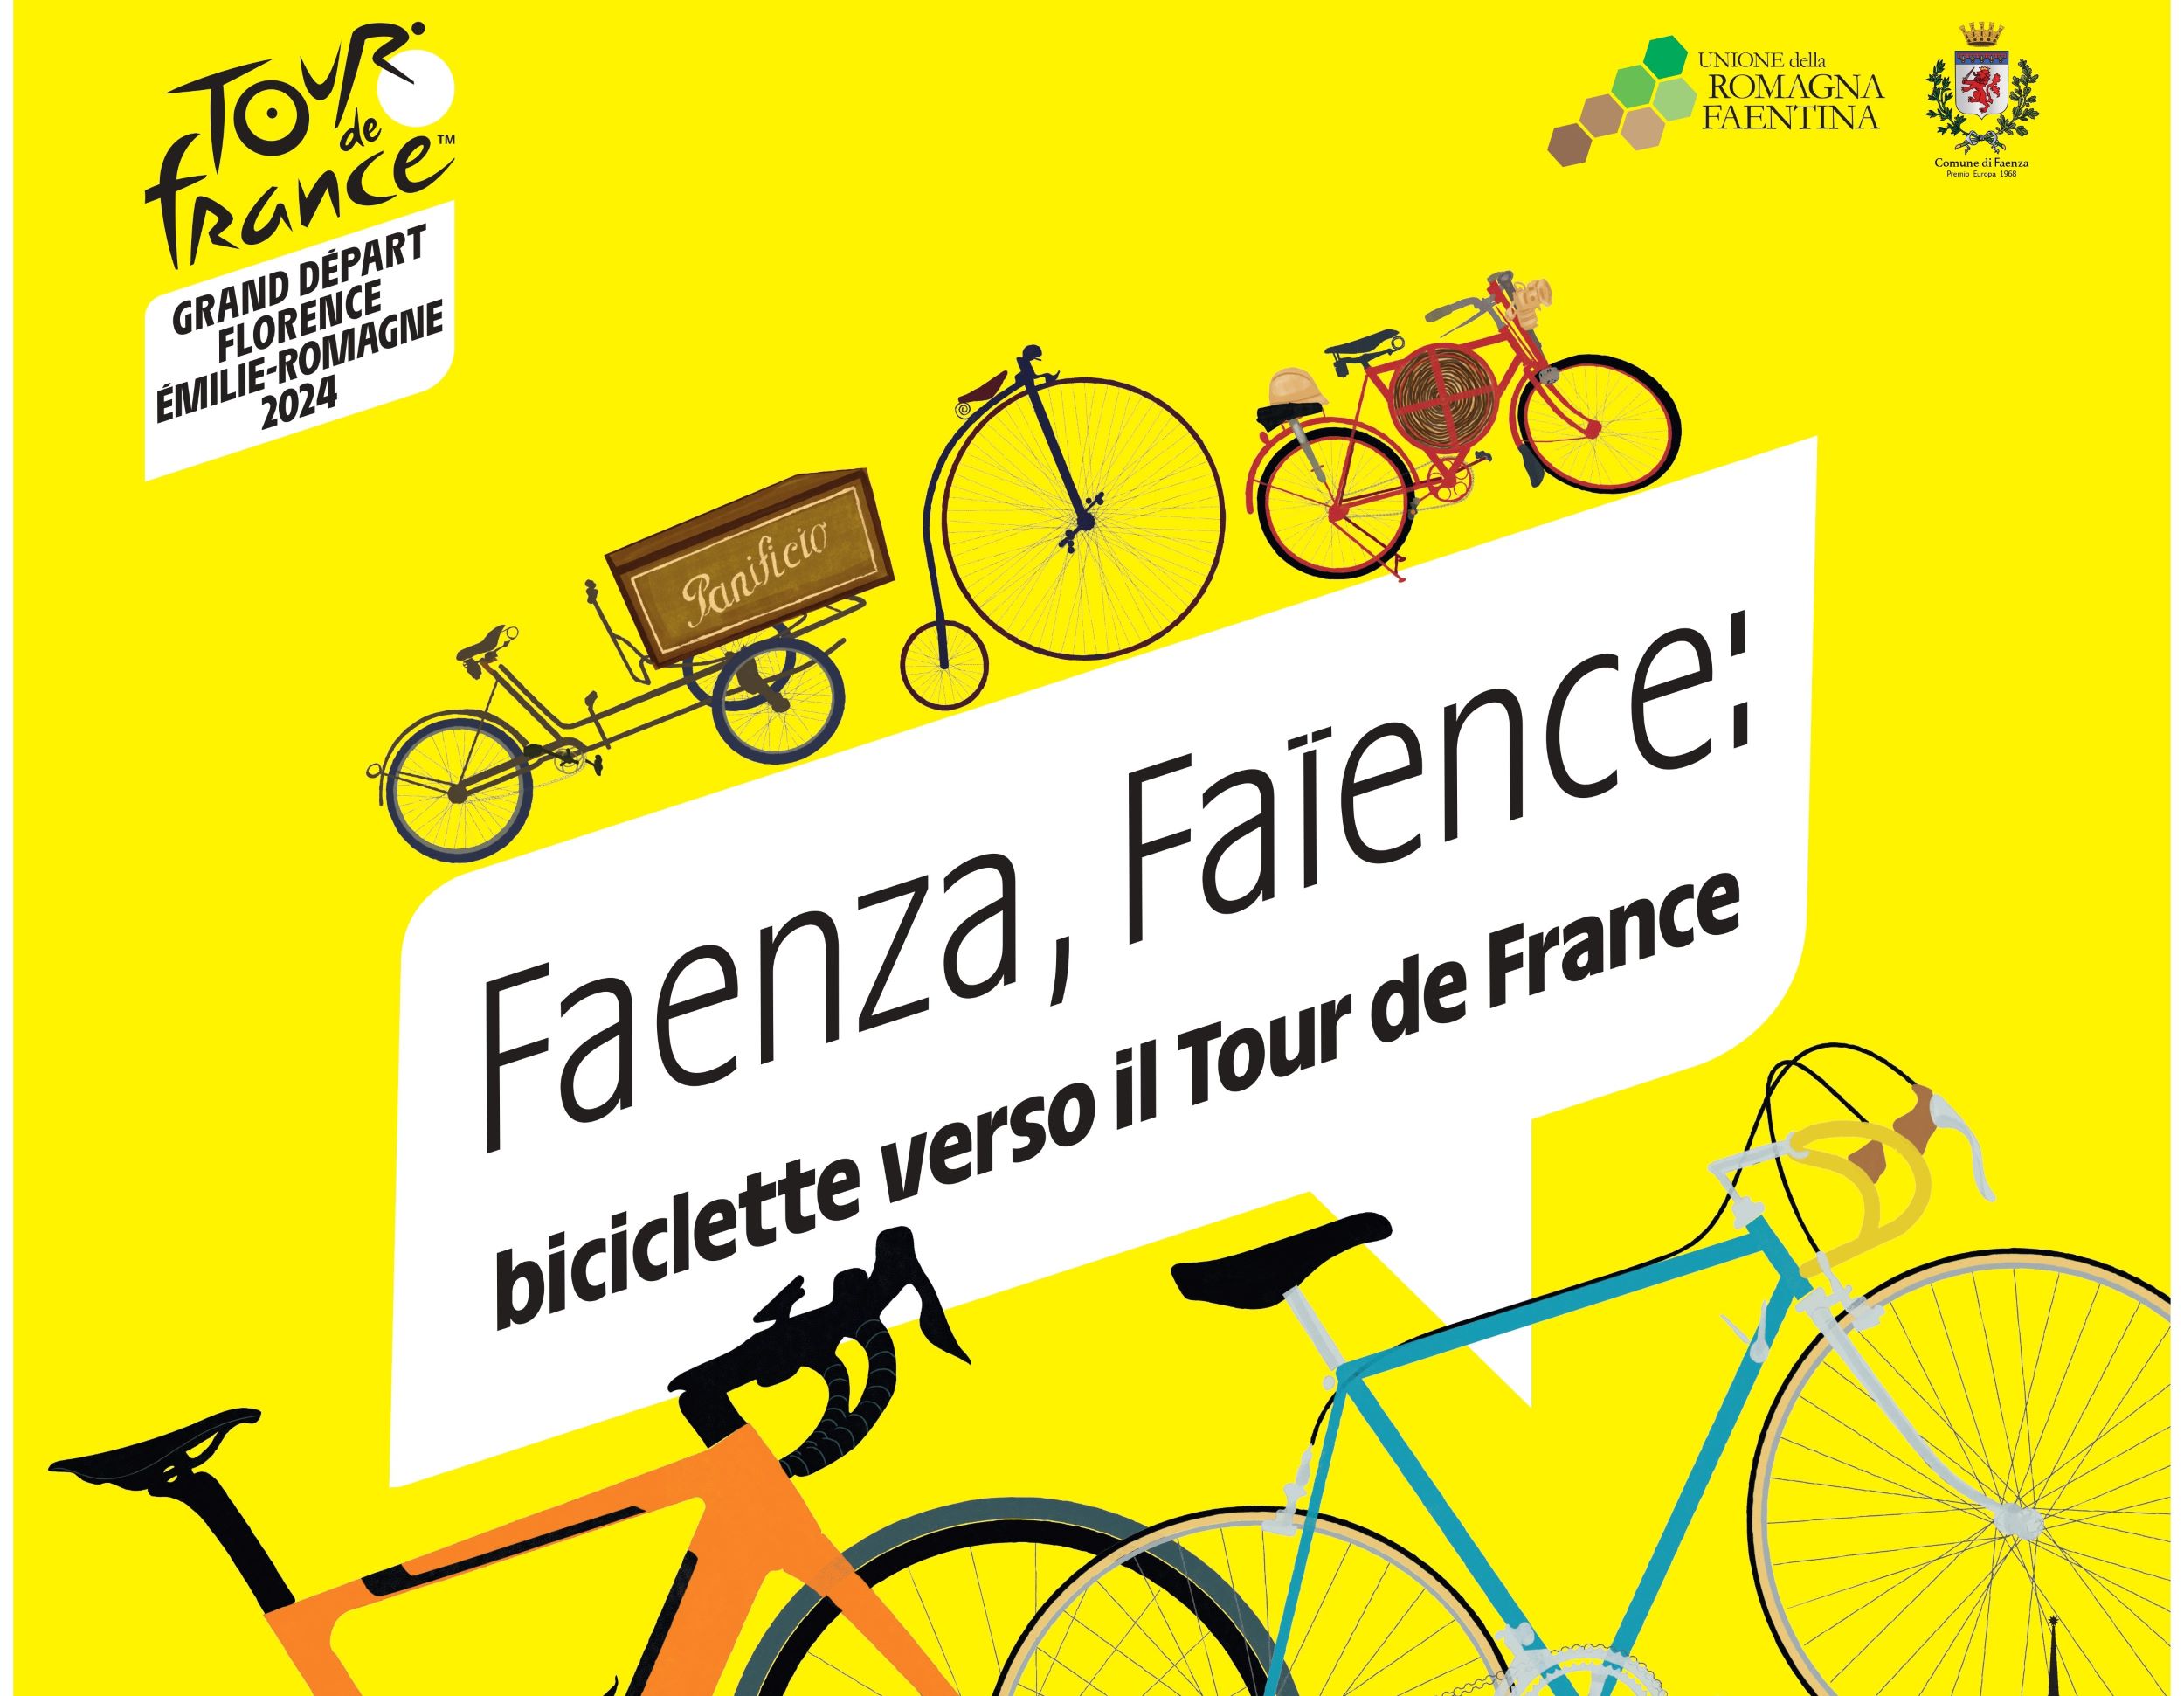 Faenza, Faïence, biciclette verso il Tour de France